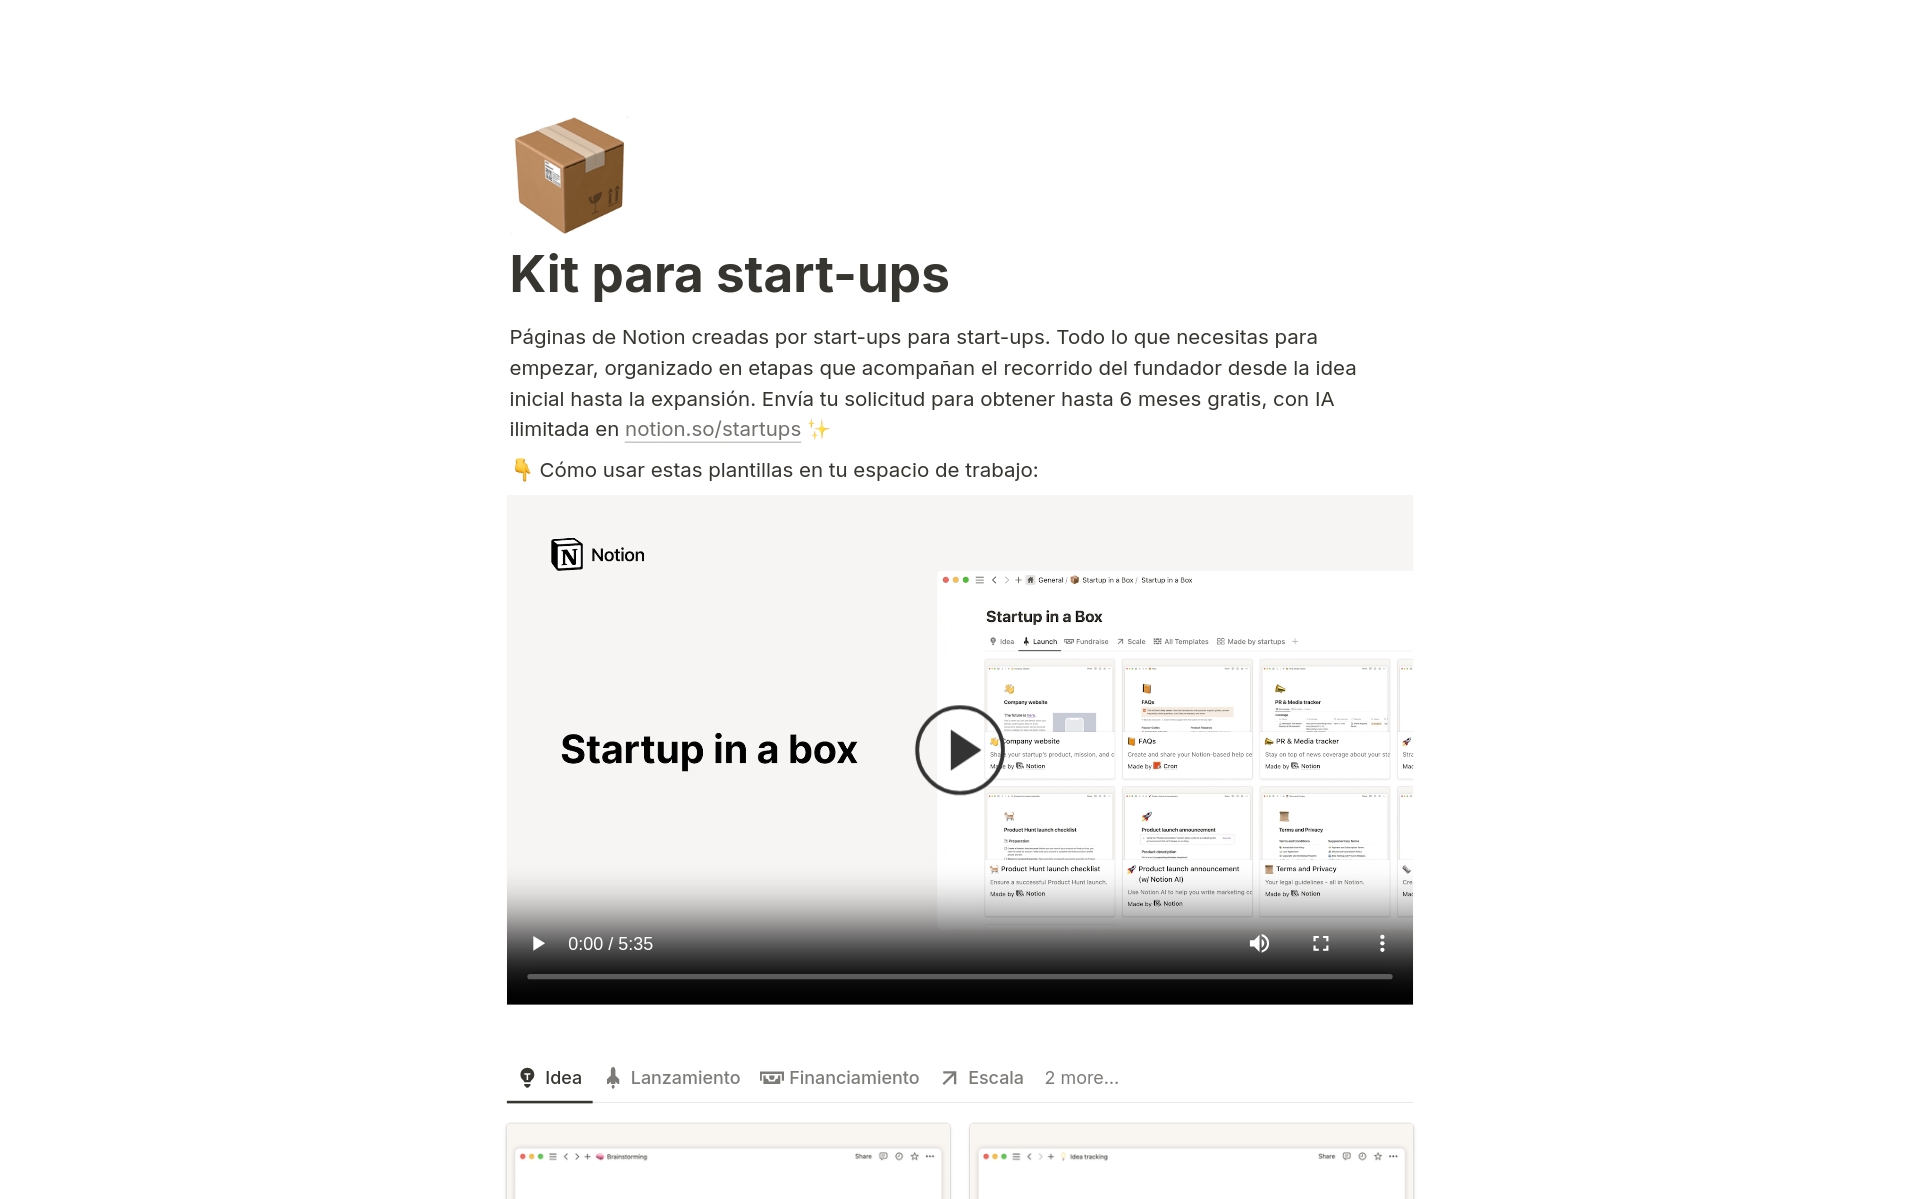 Vista previa de una plantilla para Kit para start-ups